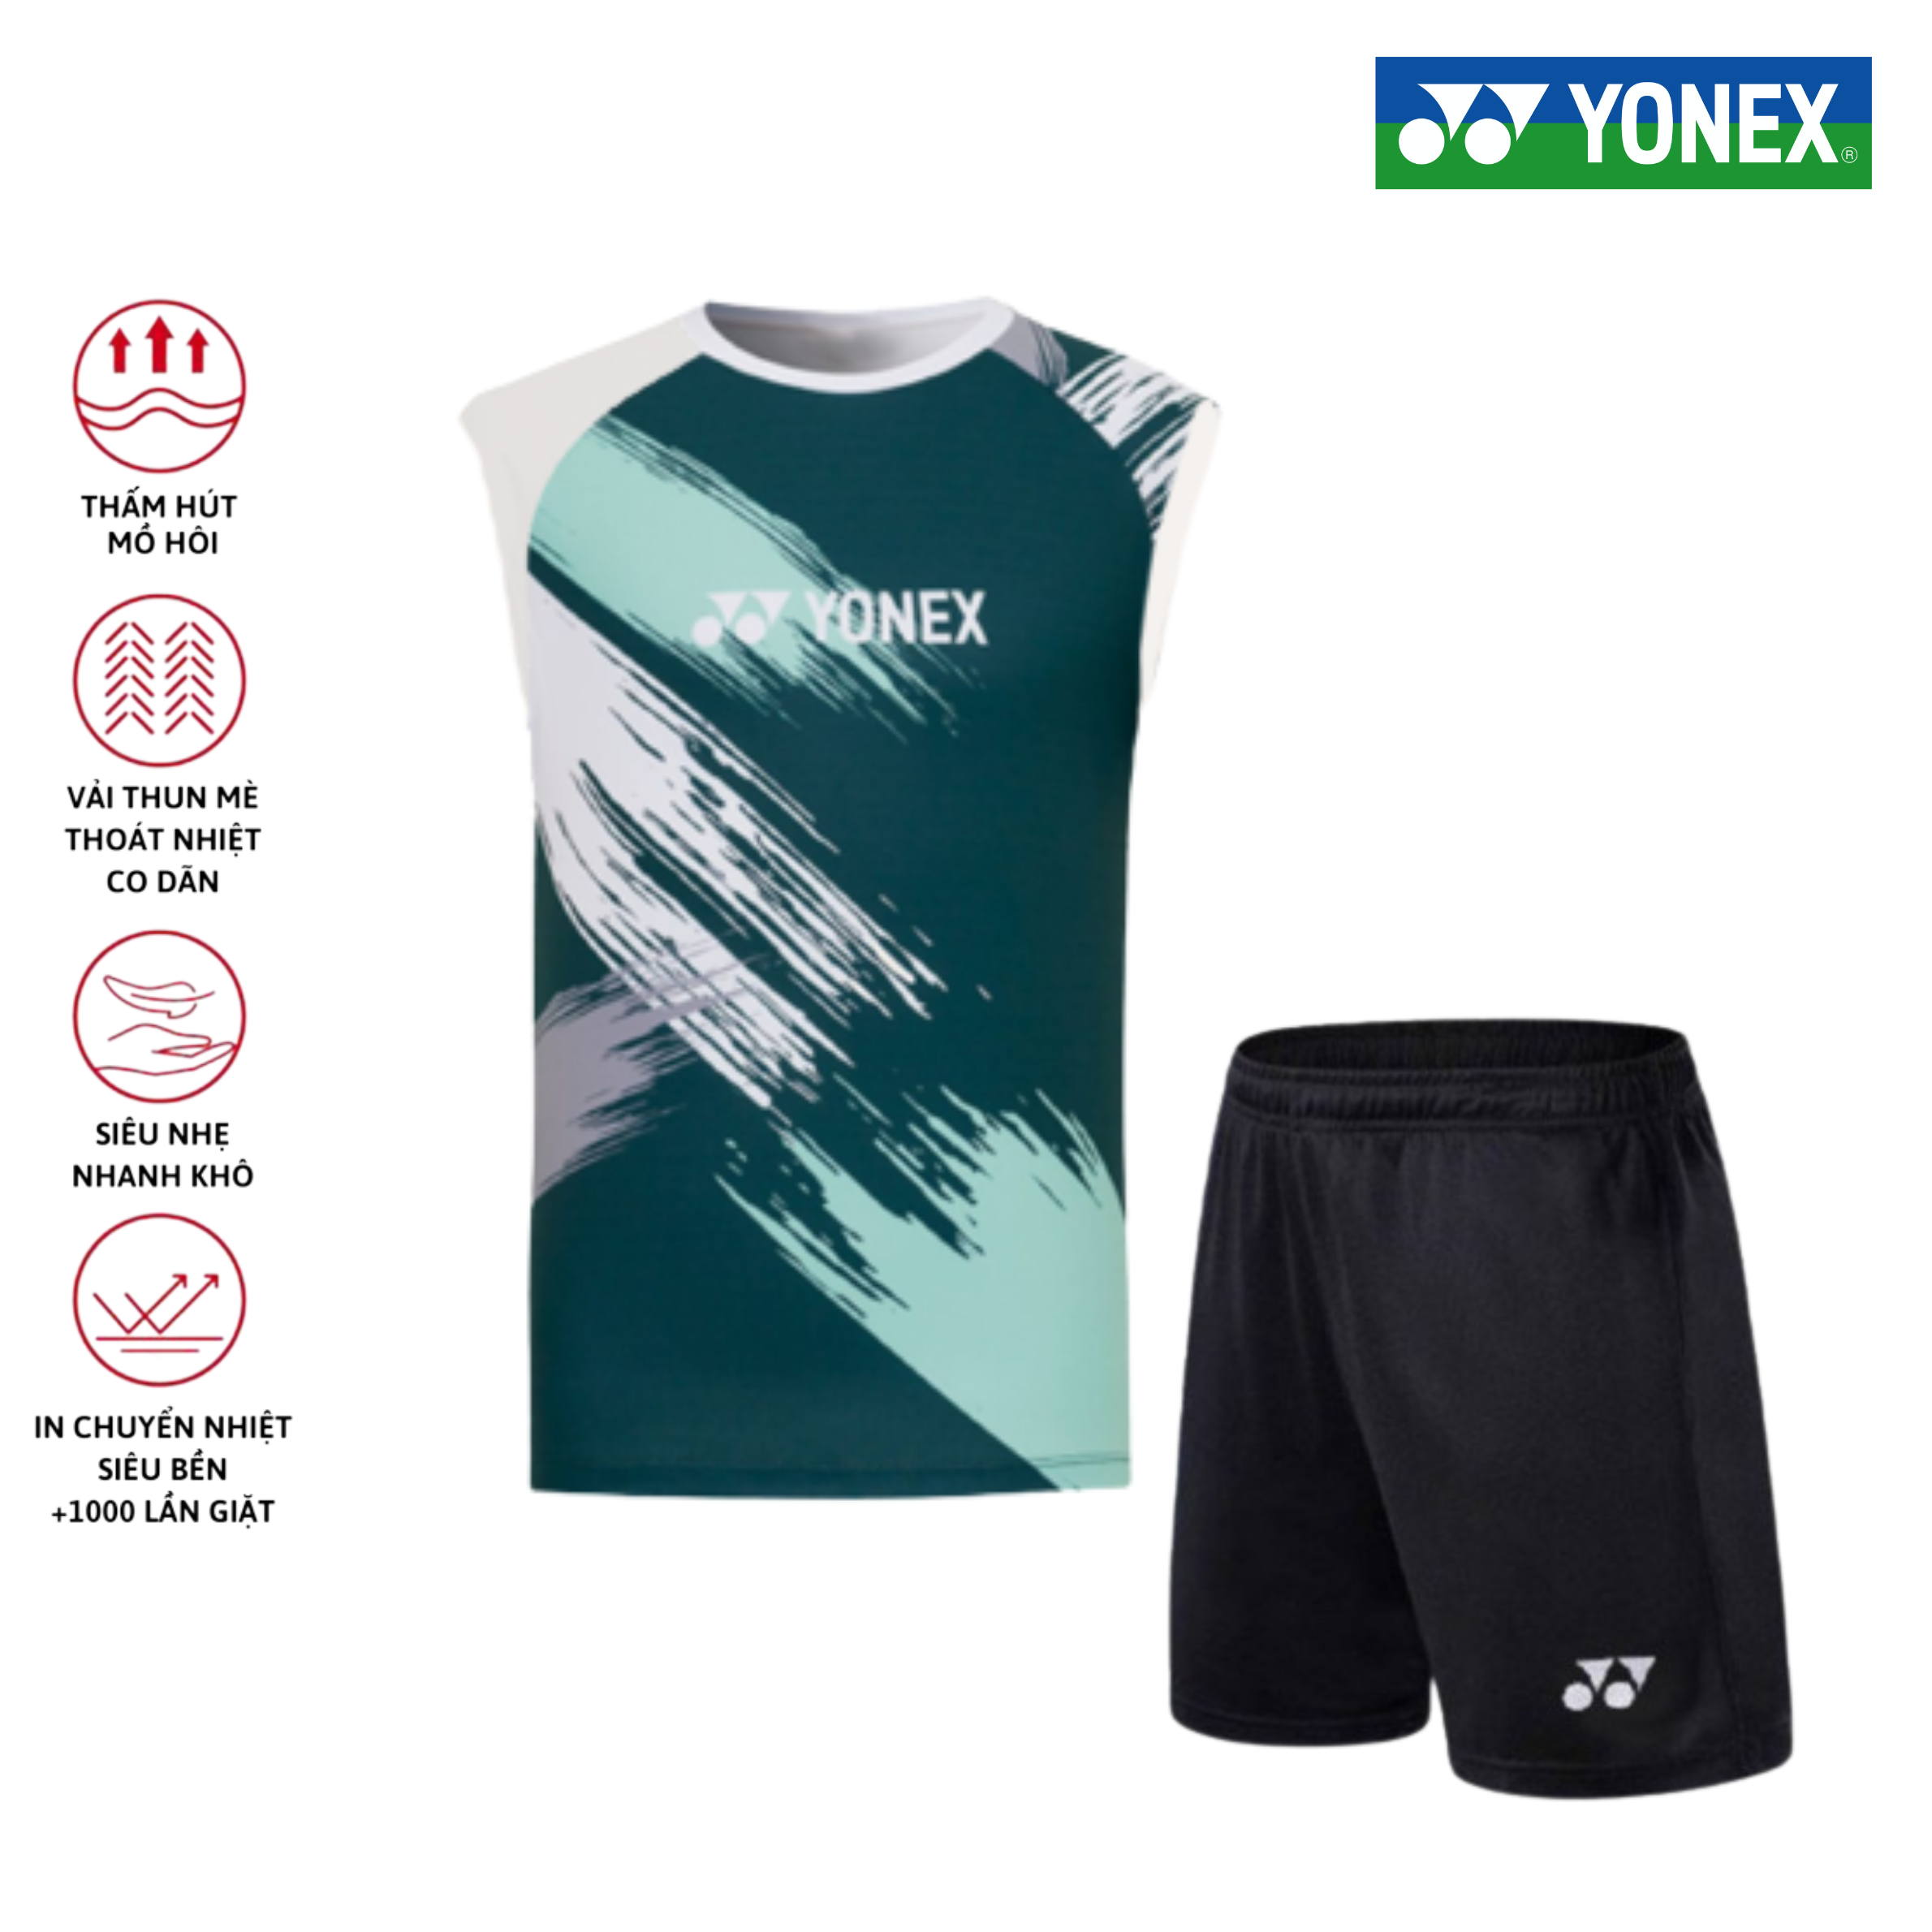 Áo cầu lông, quần cầu lông Yonex chuyên nghiệp mới nhất sử dụng tập luyện và thi đấu cầu lông A258